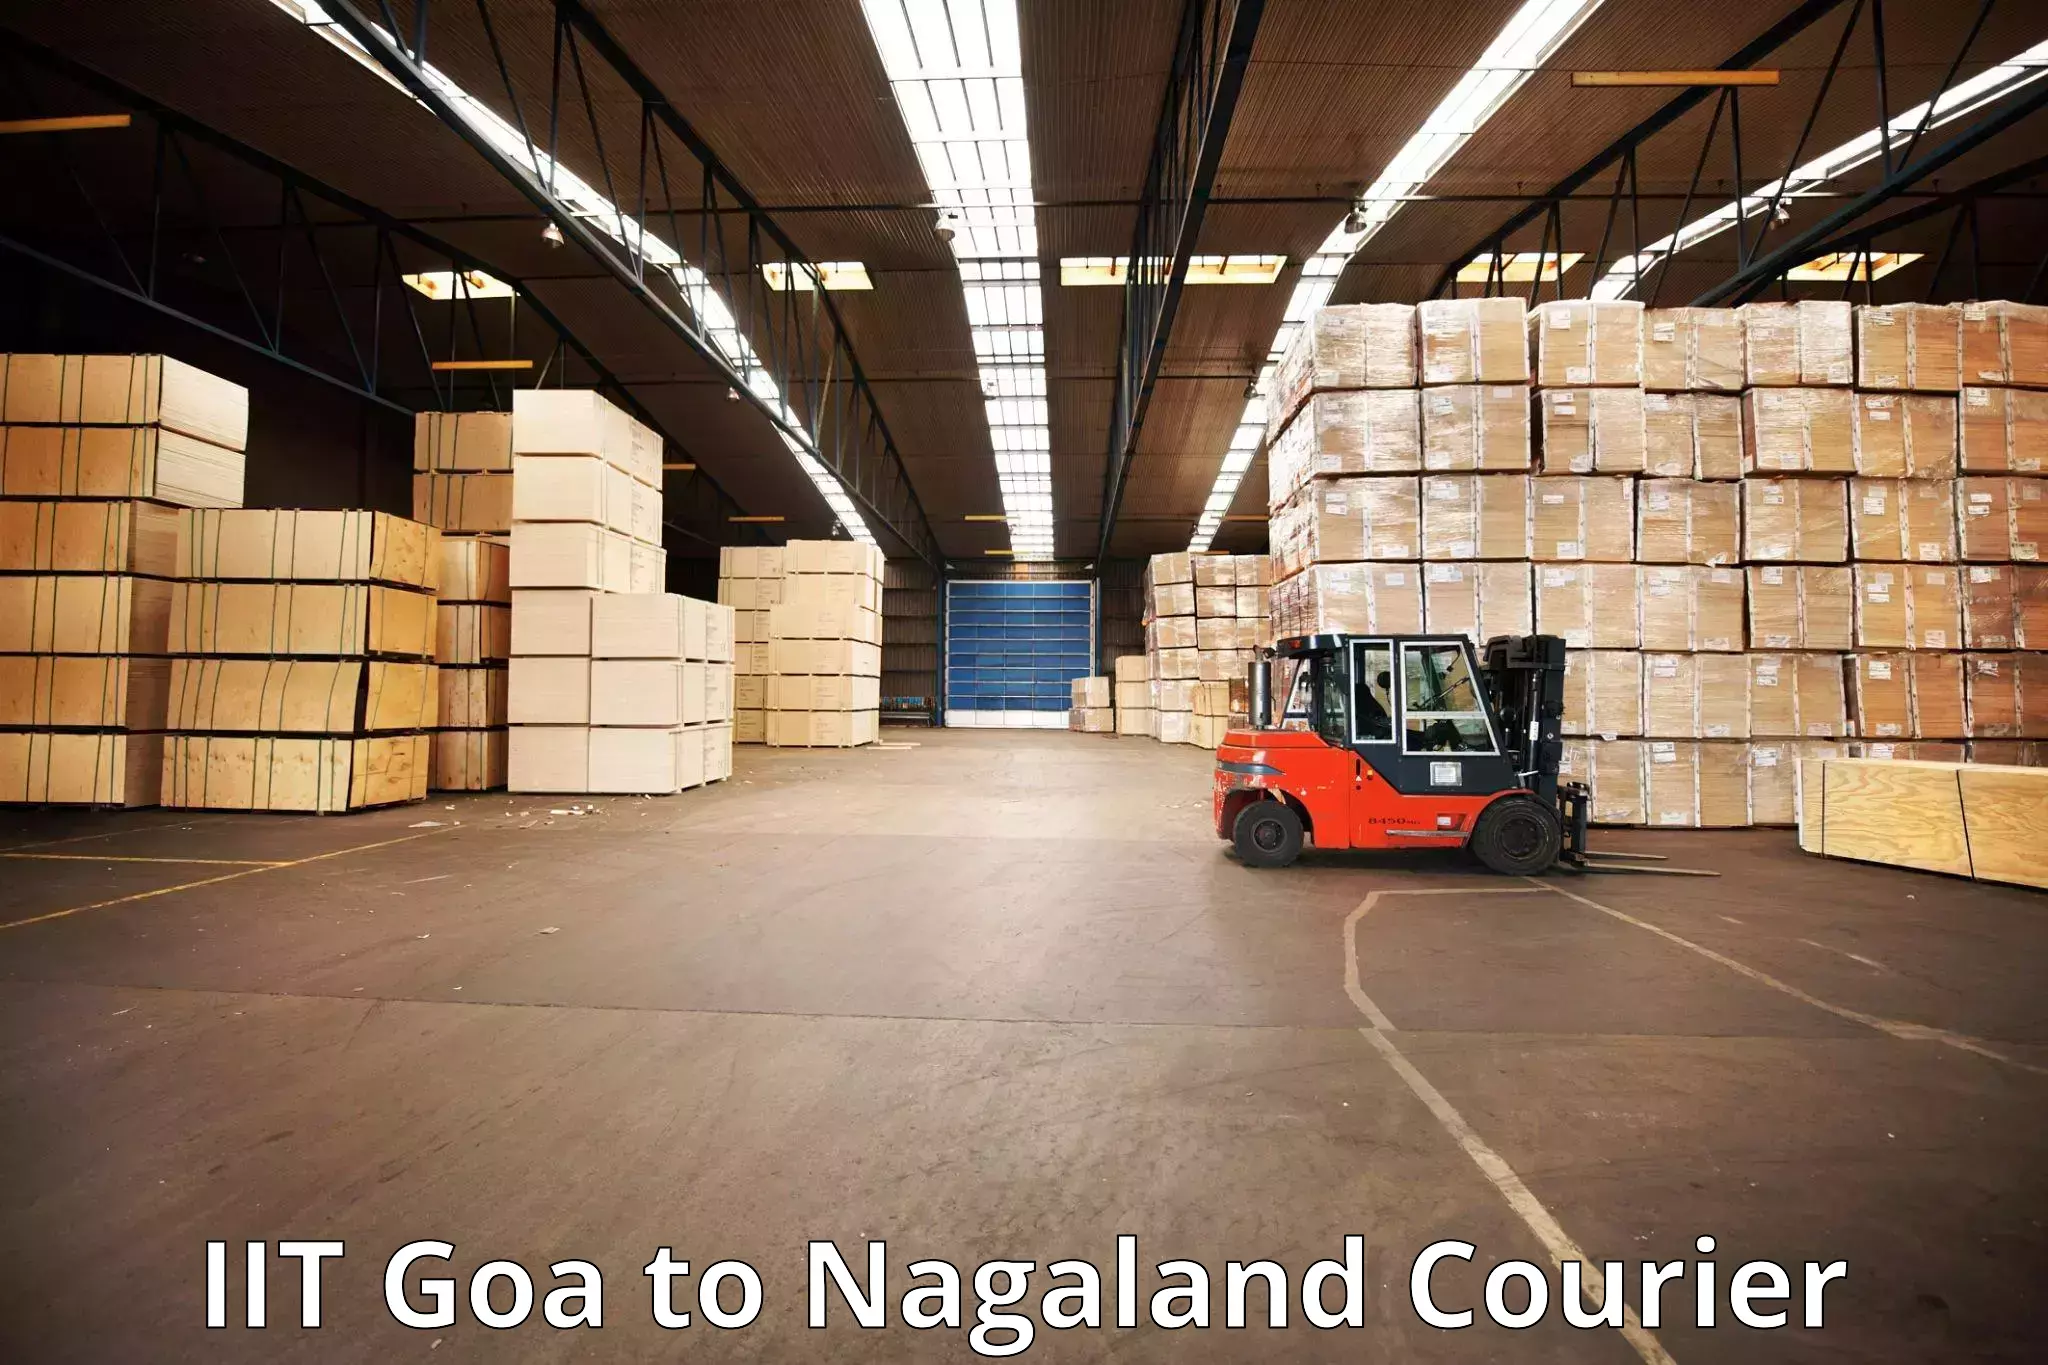 Luggage transit service IIT Goa to Nagaland